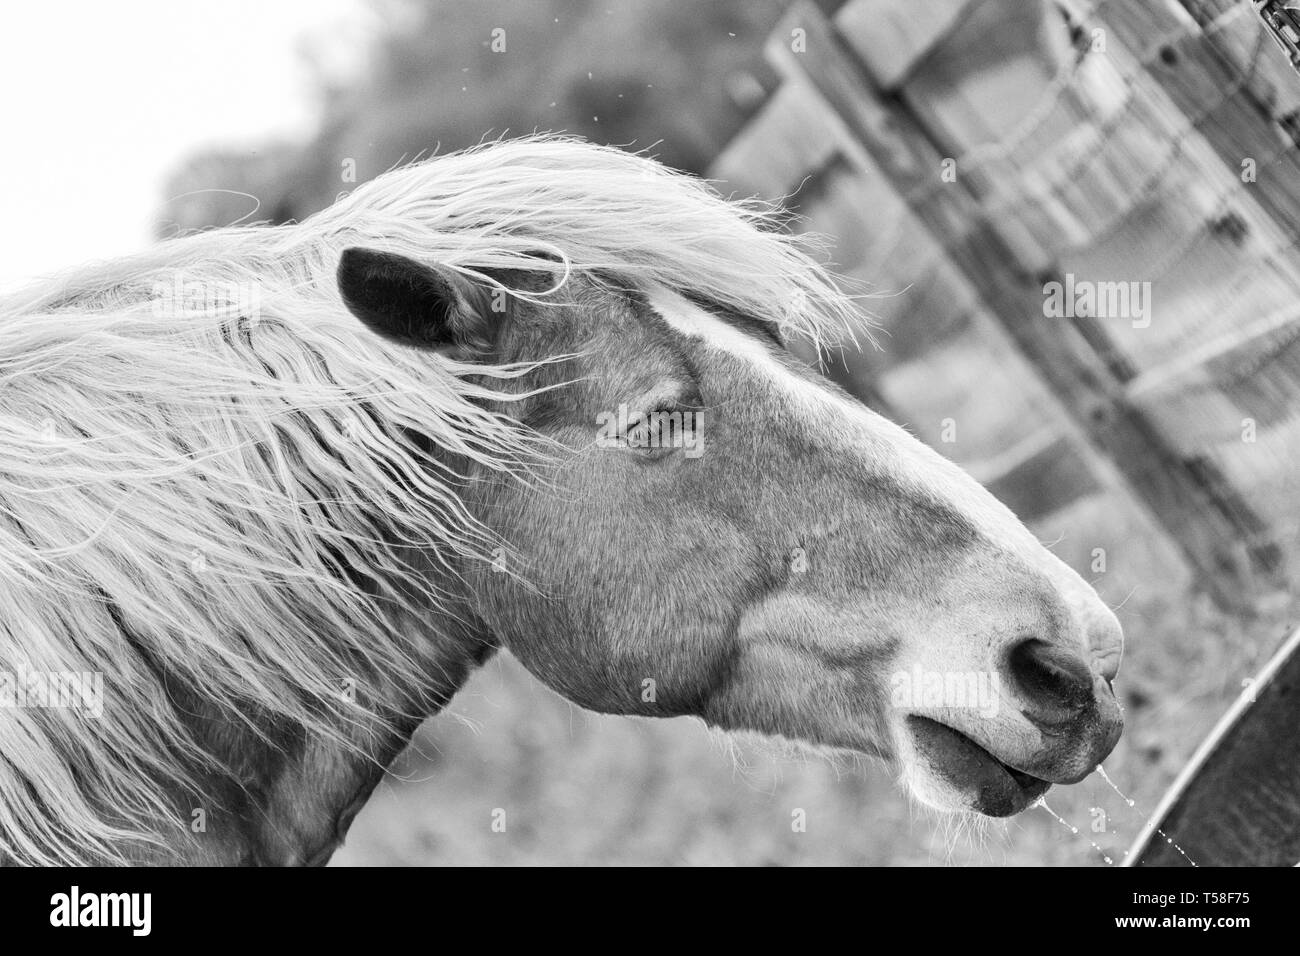 Un cheval de trait belge (Equus ferus caballus) boit de l'eau à la ferme Banque D'Images